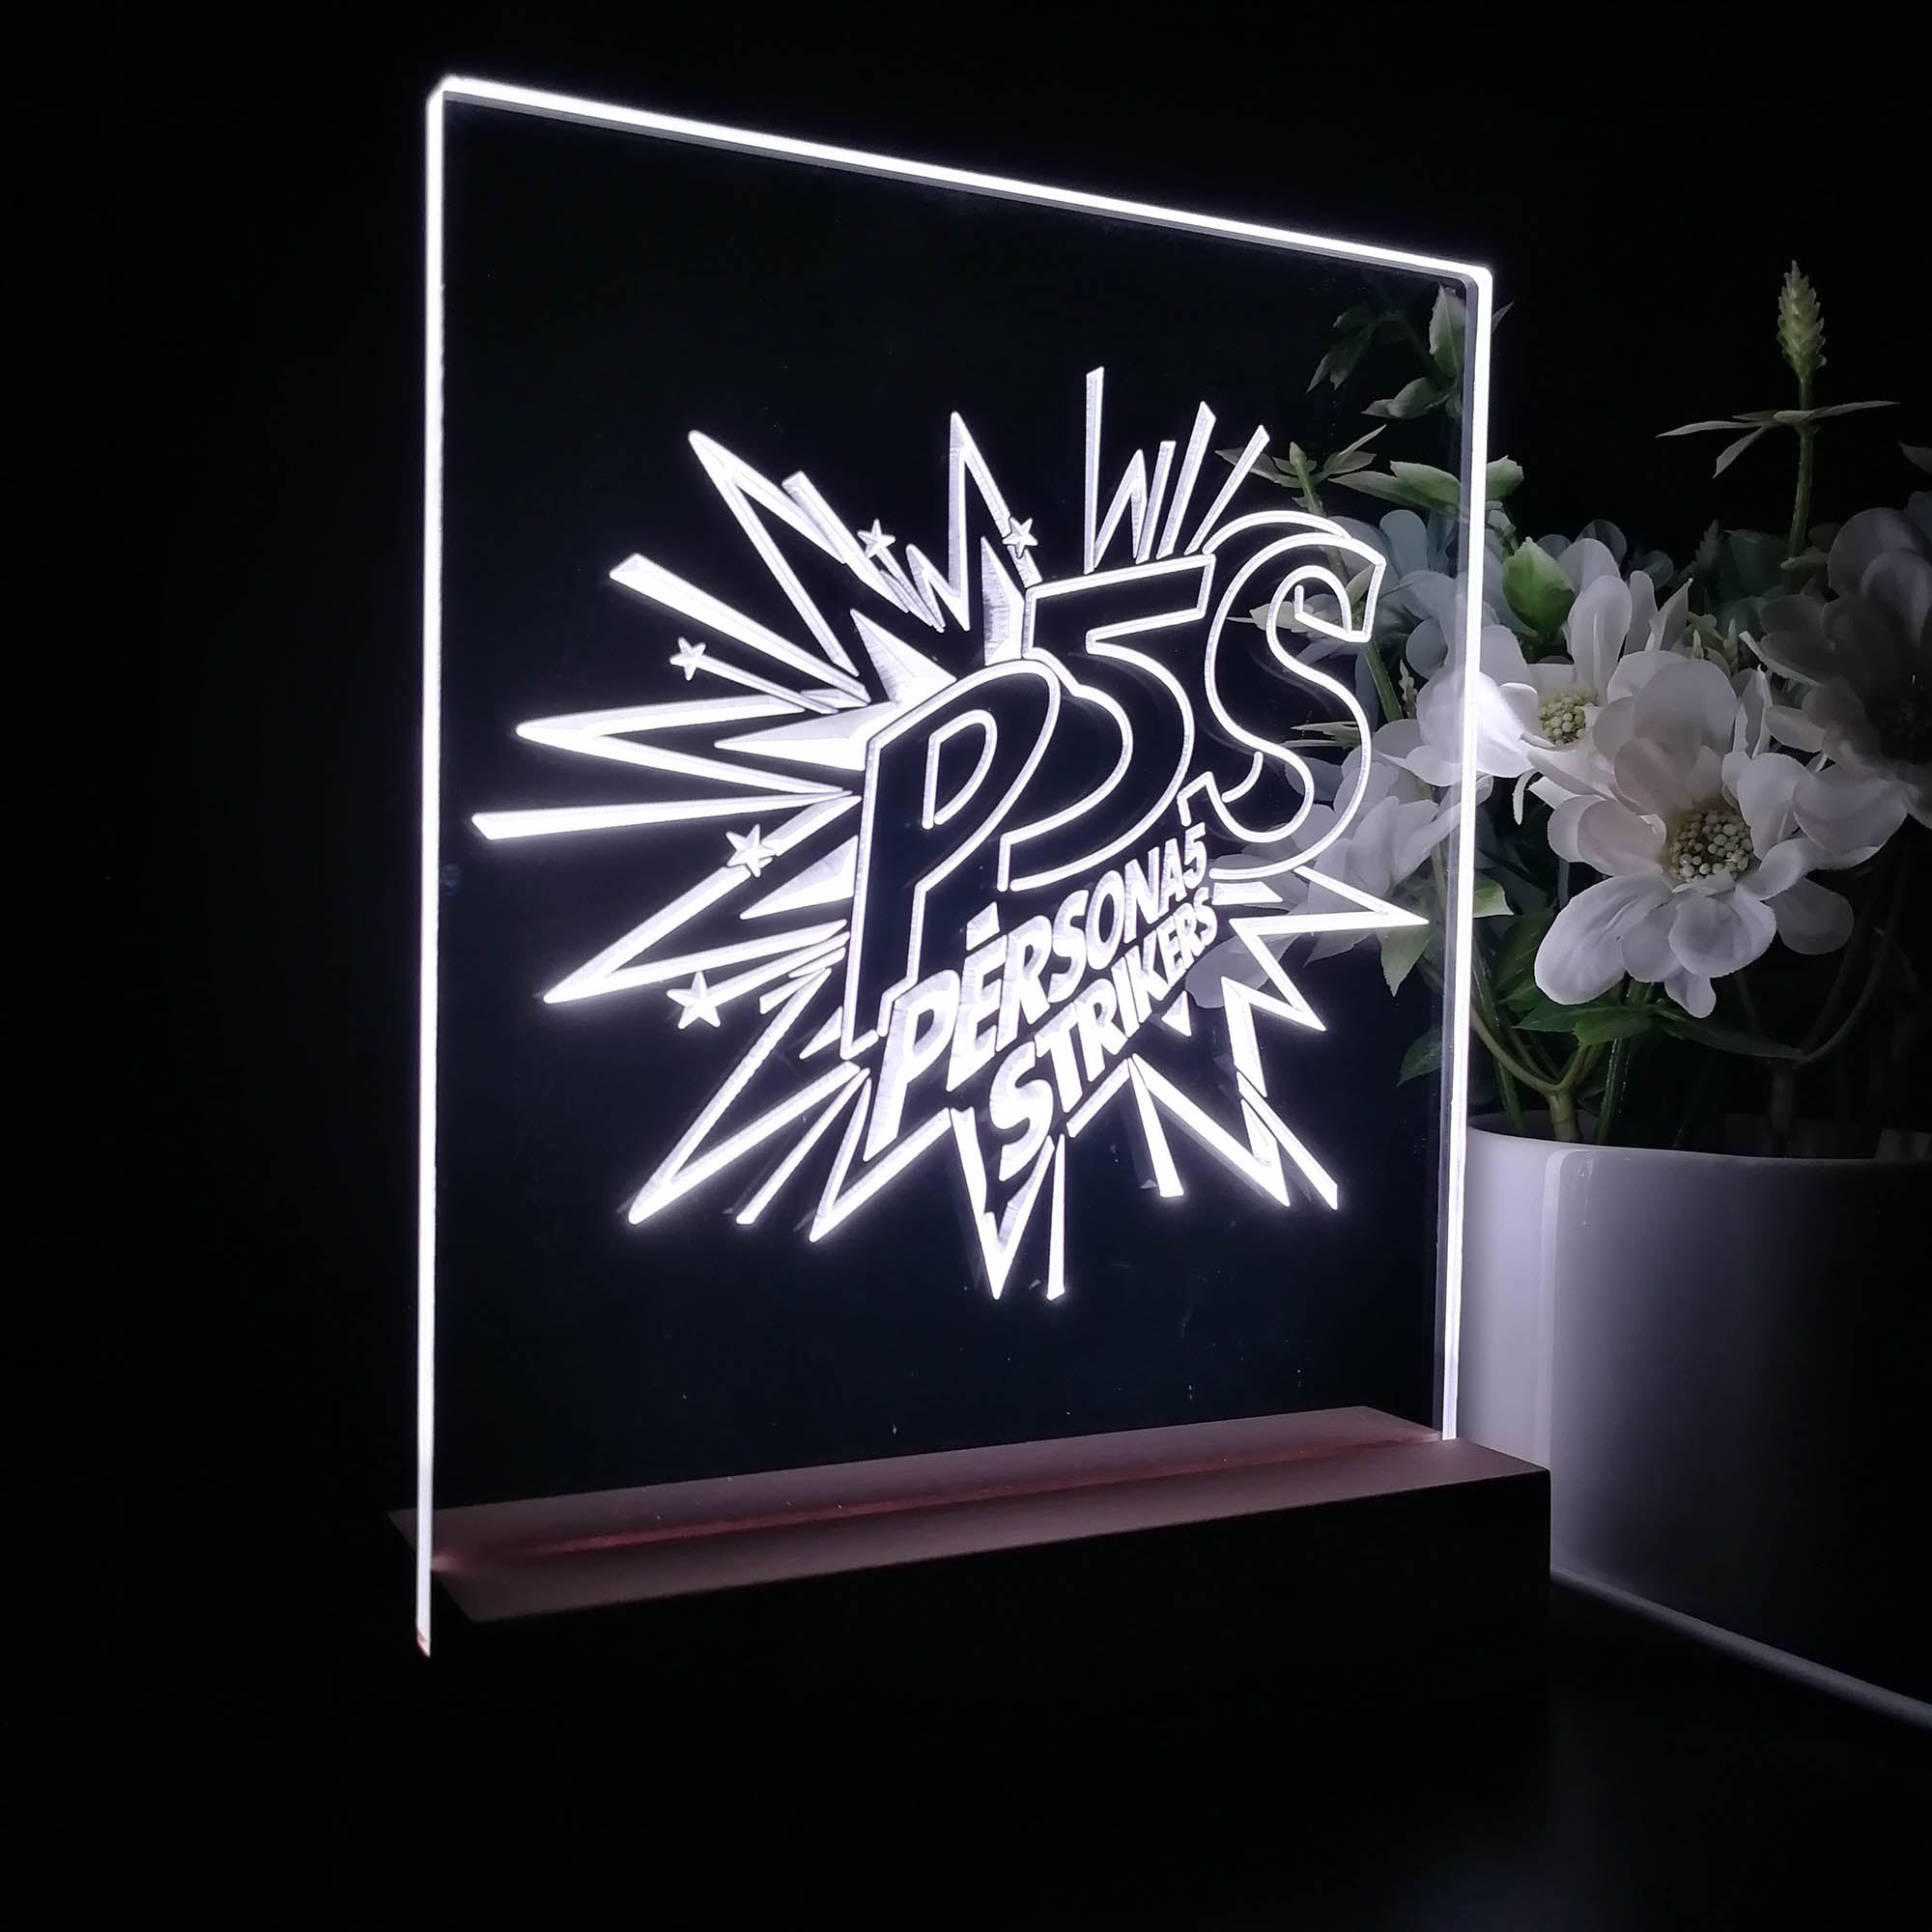 Persona 5 Strikers 3D LED Optical Illusion Sleep Night Light Table Lamp